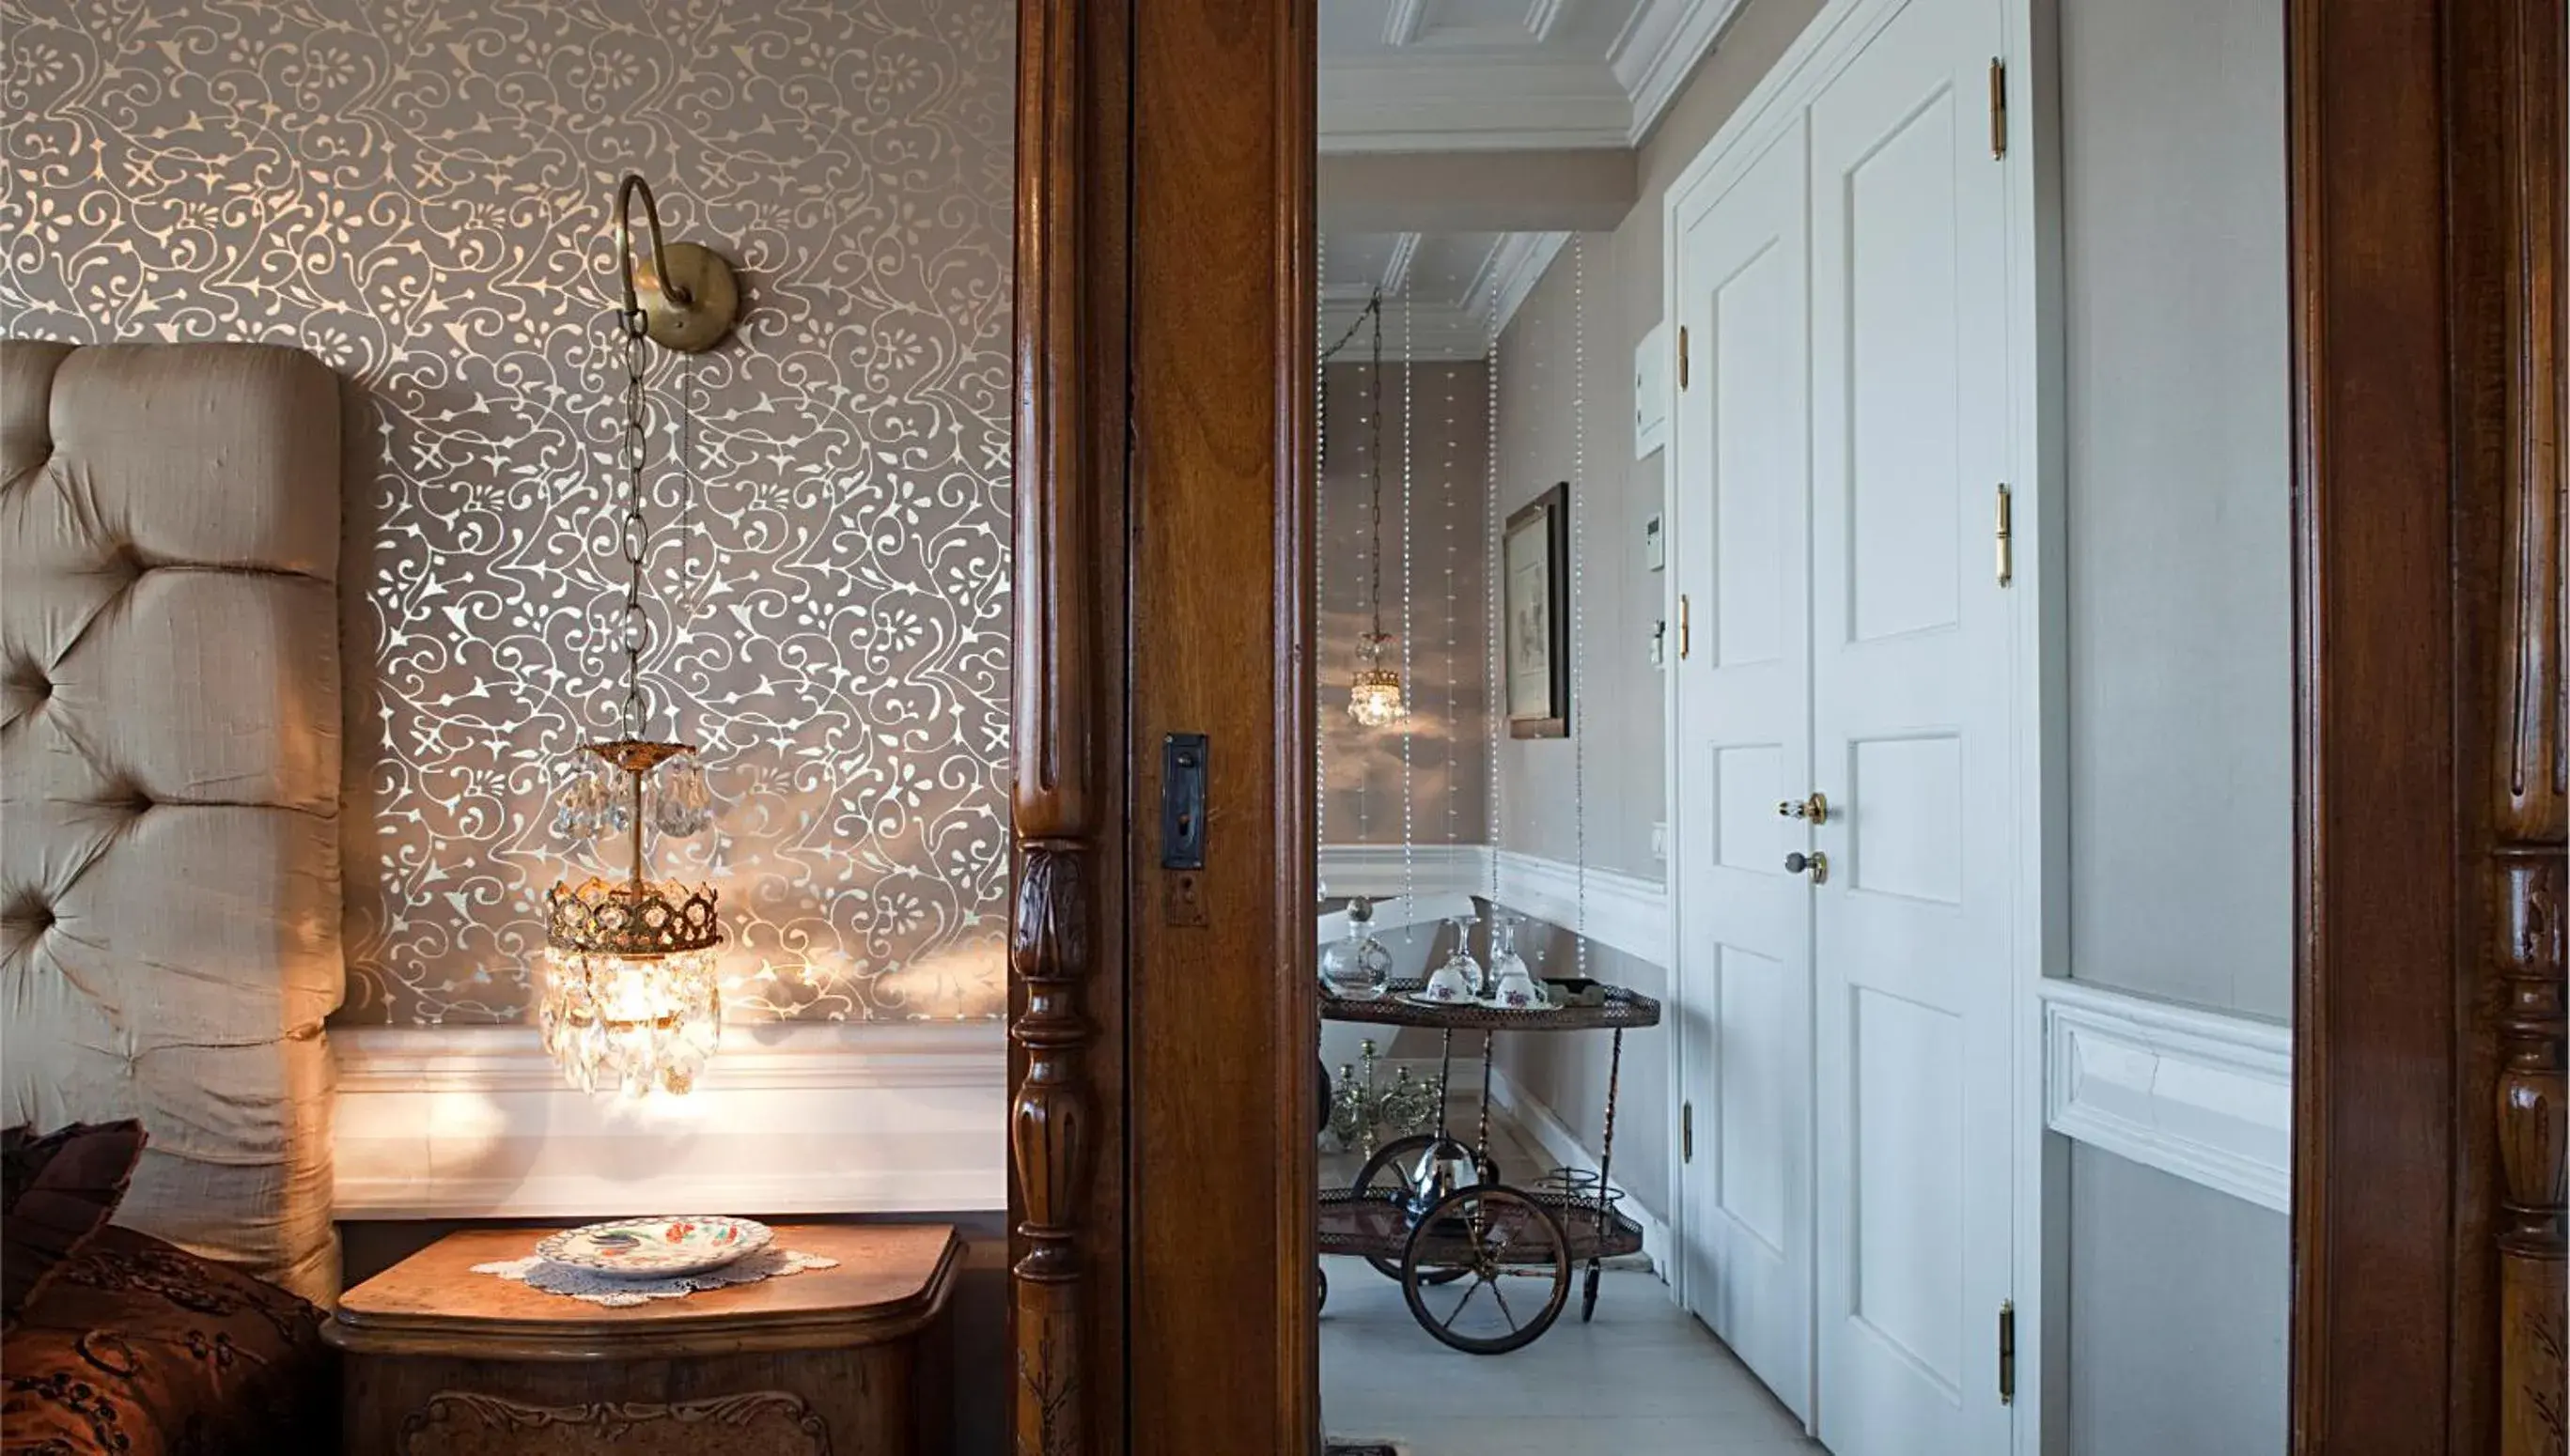 Decorative detail, Bathroom in Kitapevi Hotel